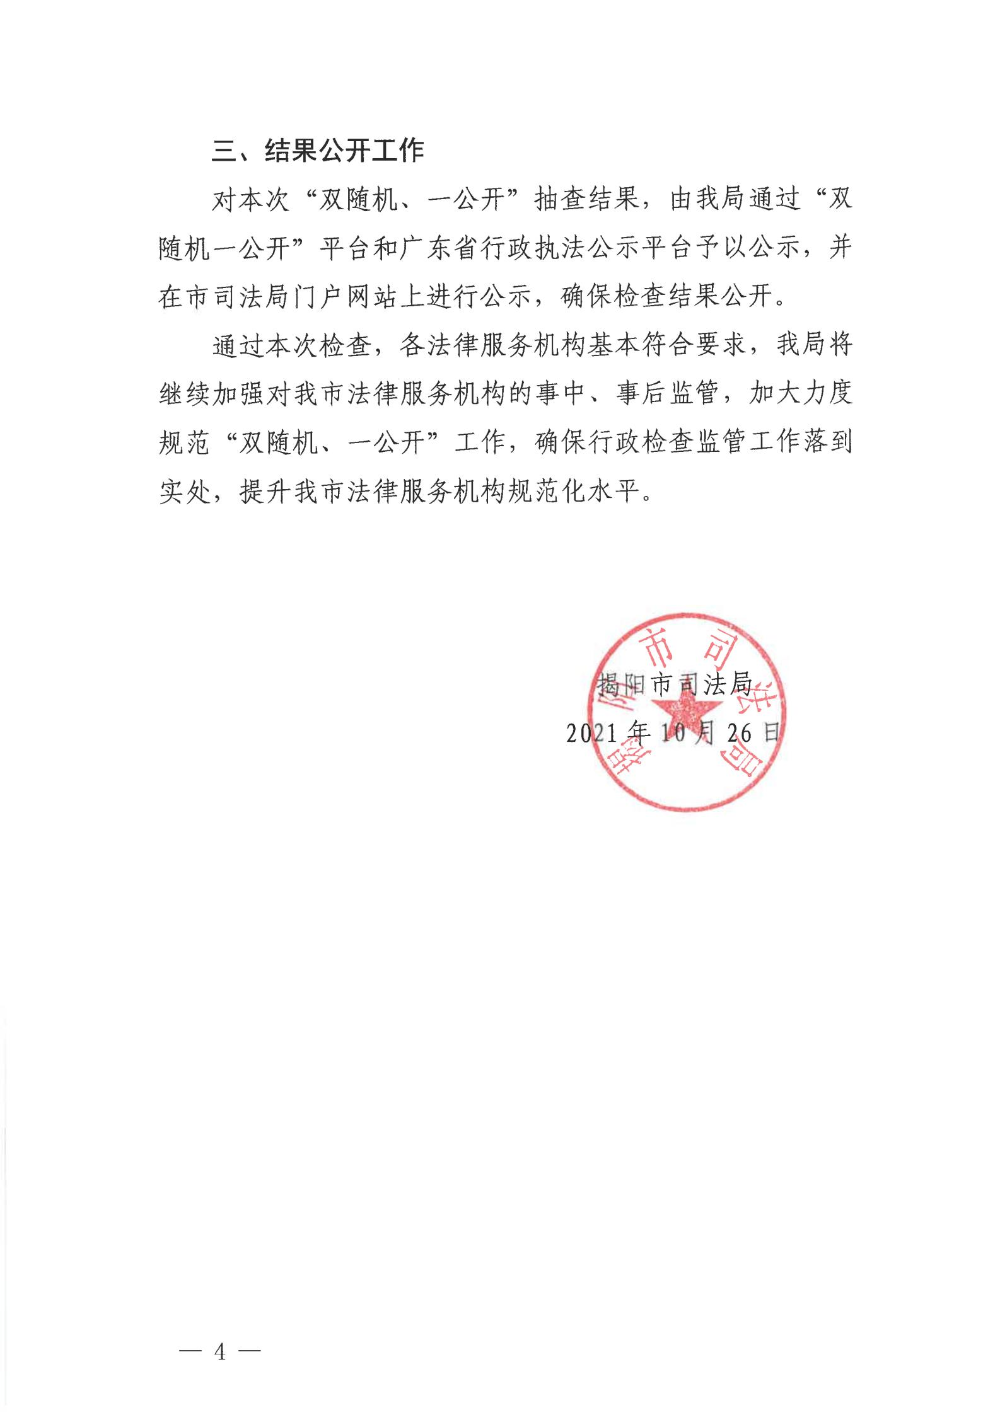 揭阳市司法局2021年法律服务机构“双随机、一公开”监管工作的情况报告_03.jpg